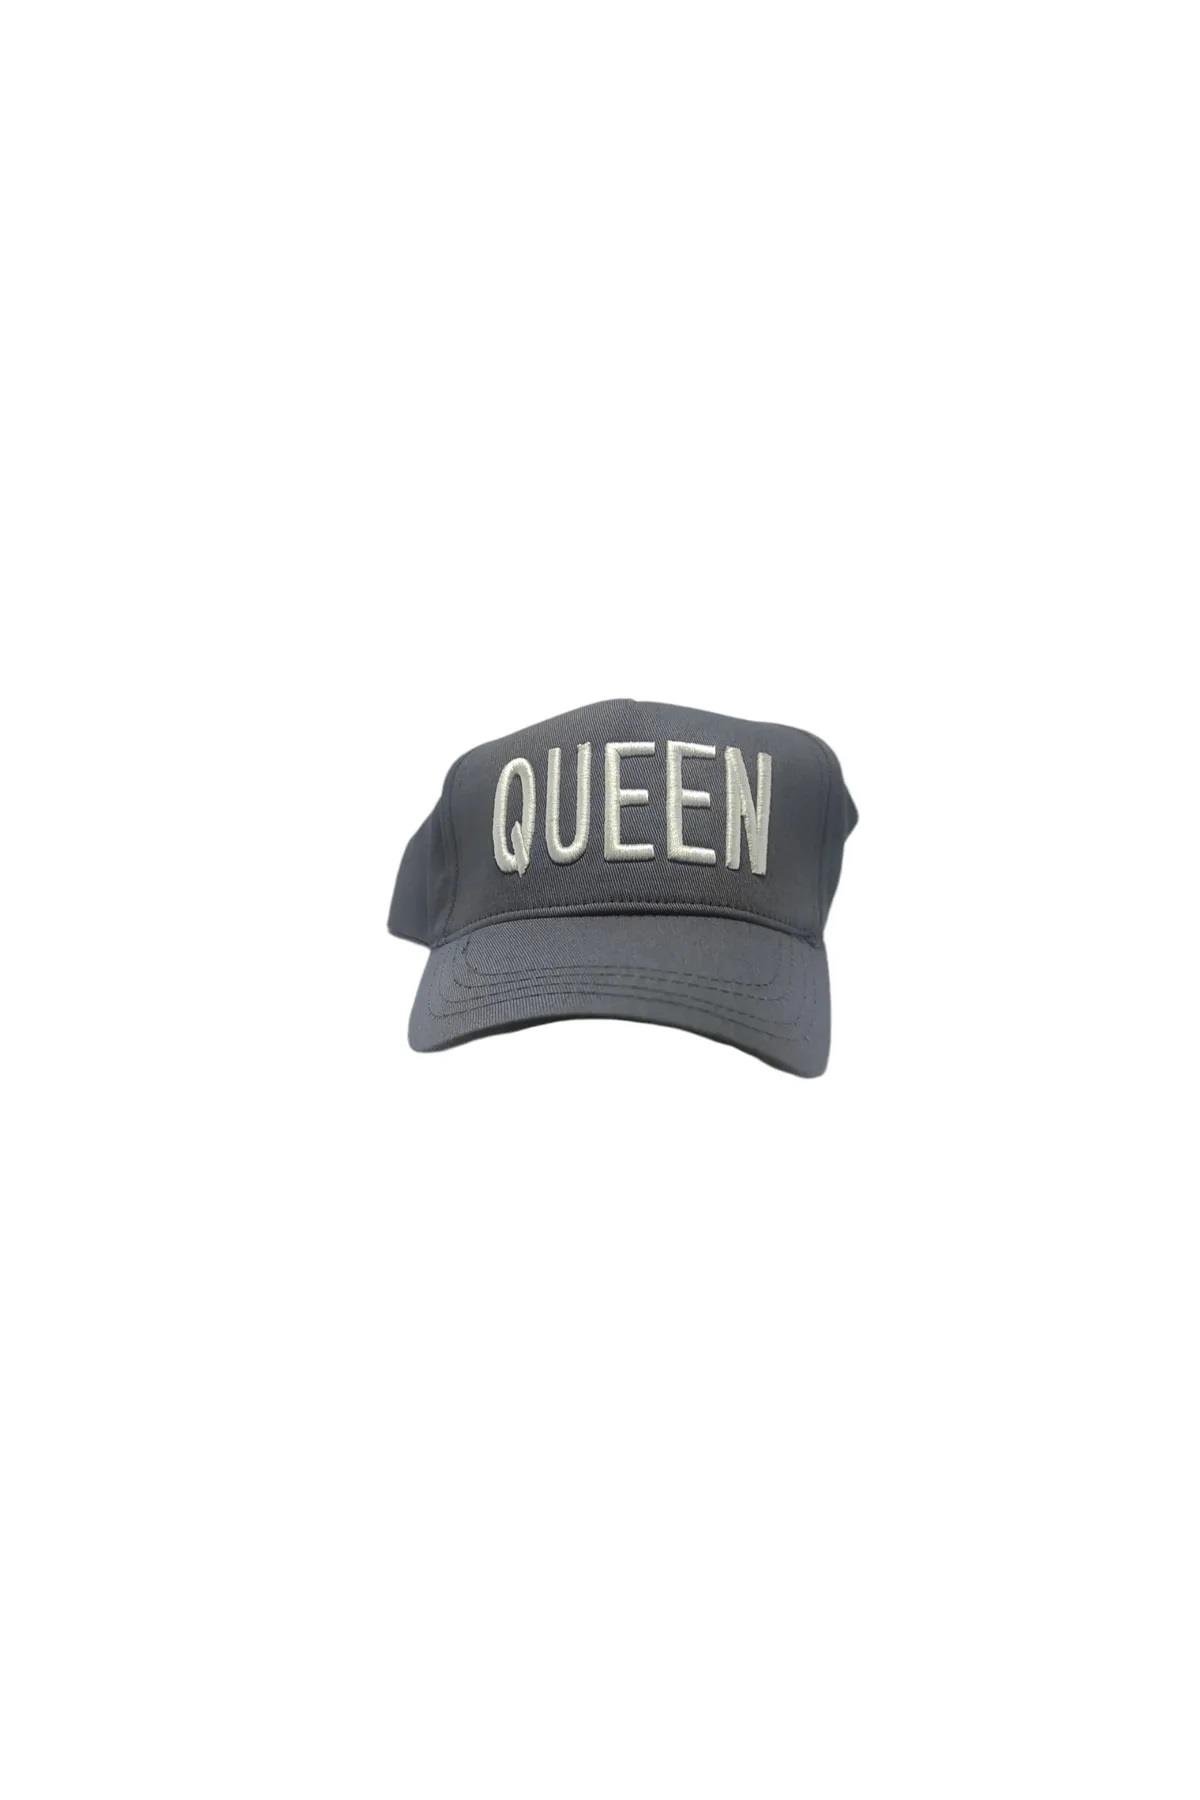 Queen Beyaz Nakış Yazılı Şapka | ÇamaşırcımShop